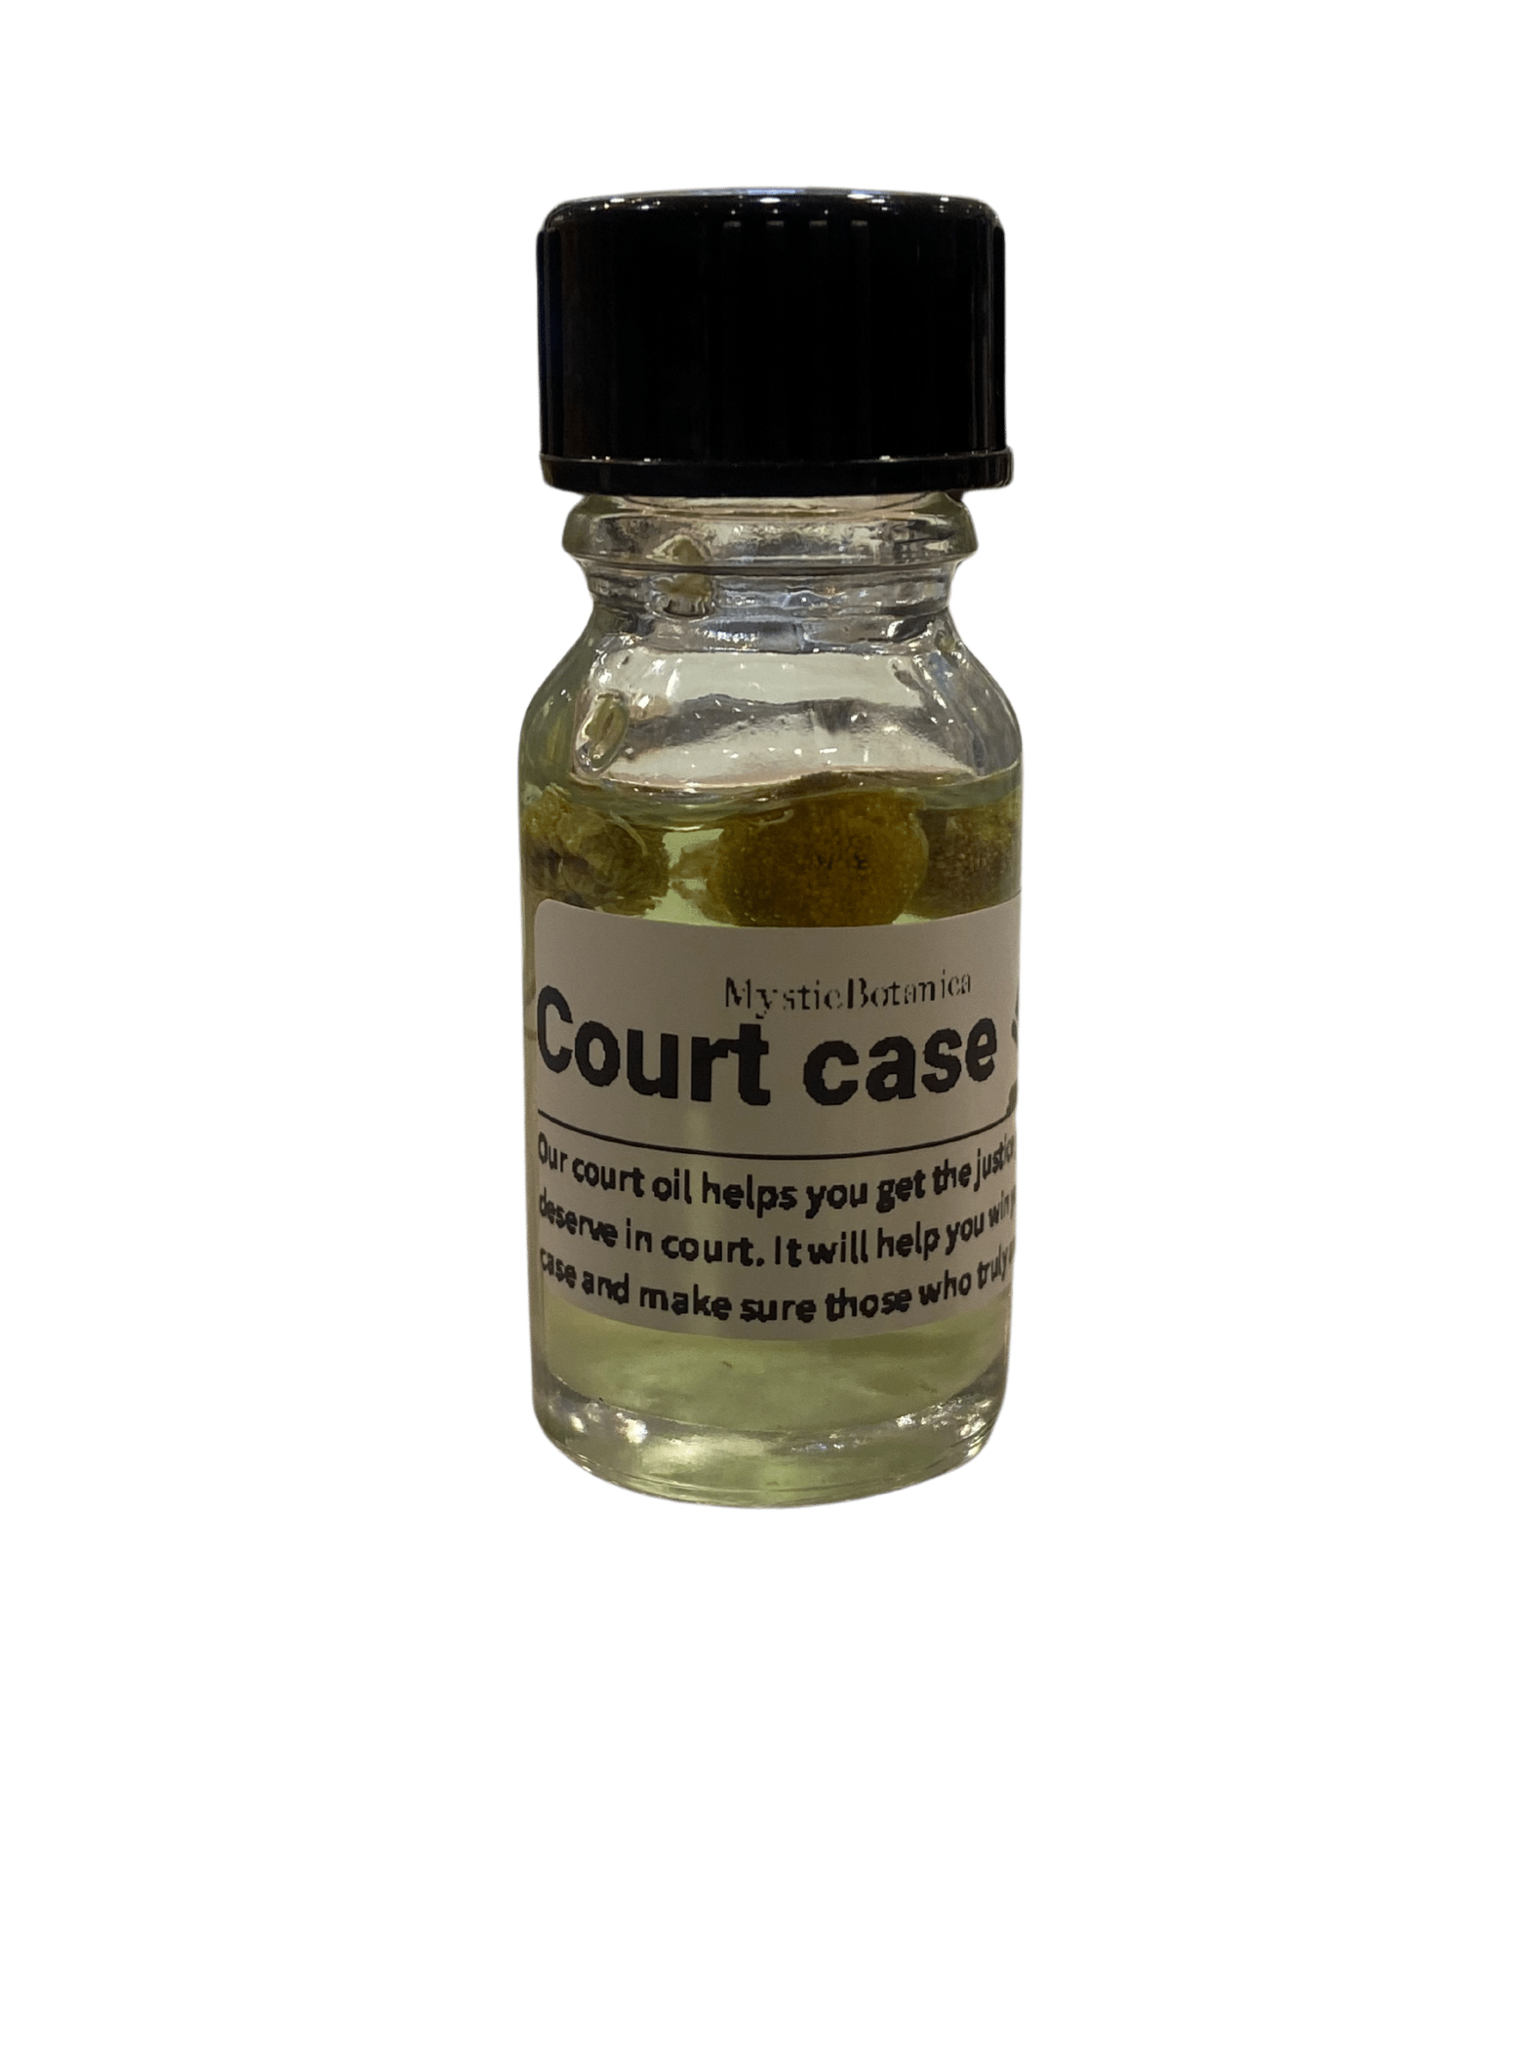 Court case oils